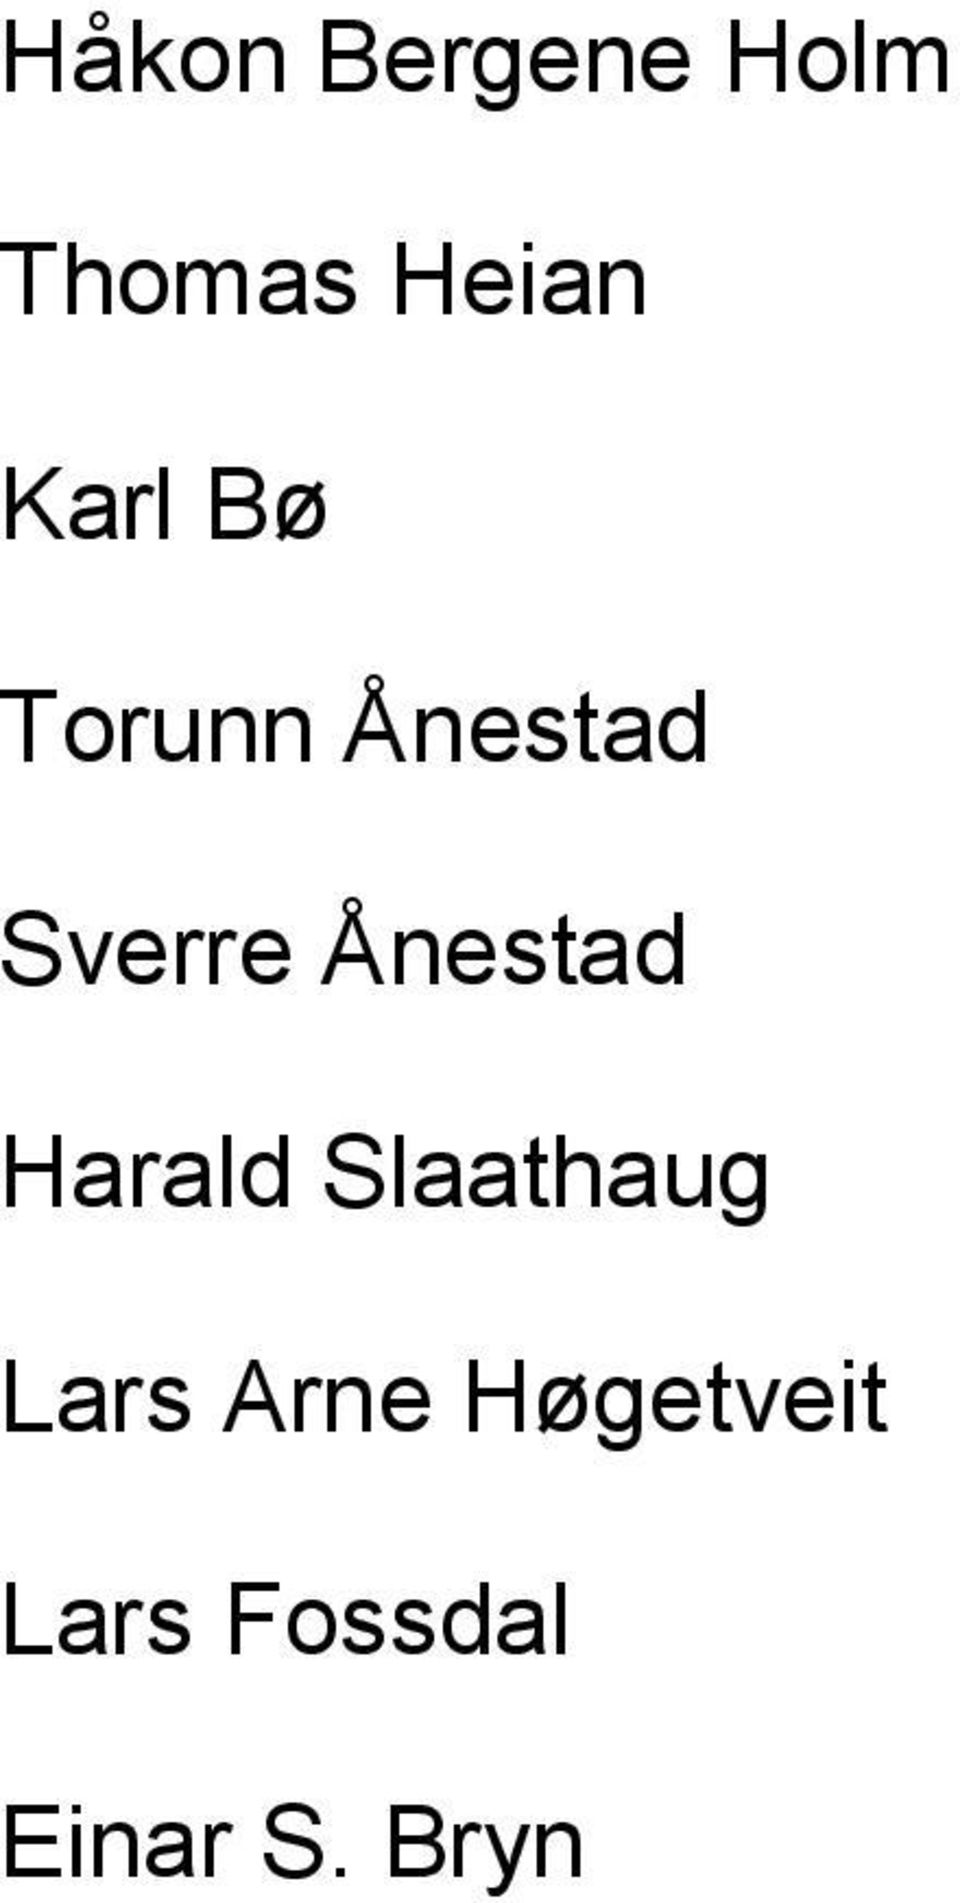 Ånestad Harald Slaathaug Lars